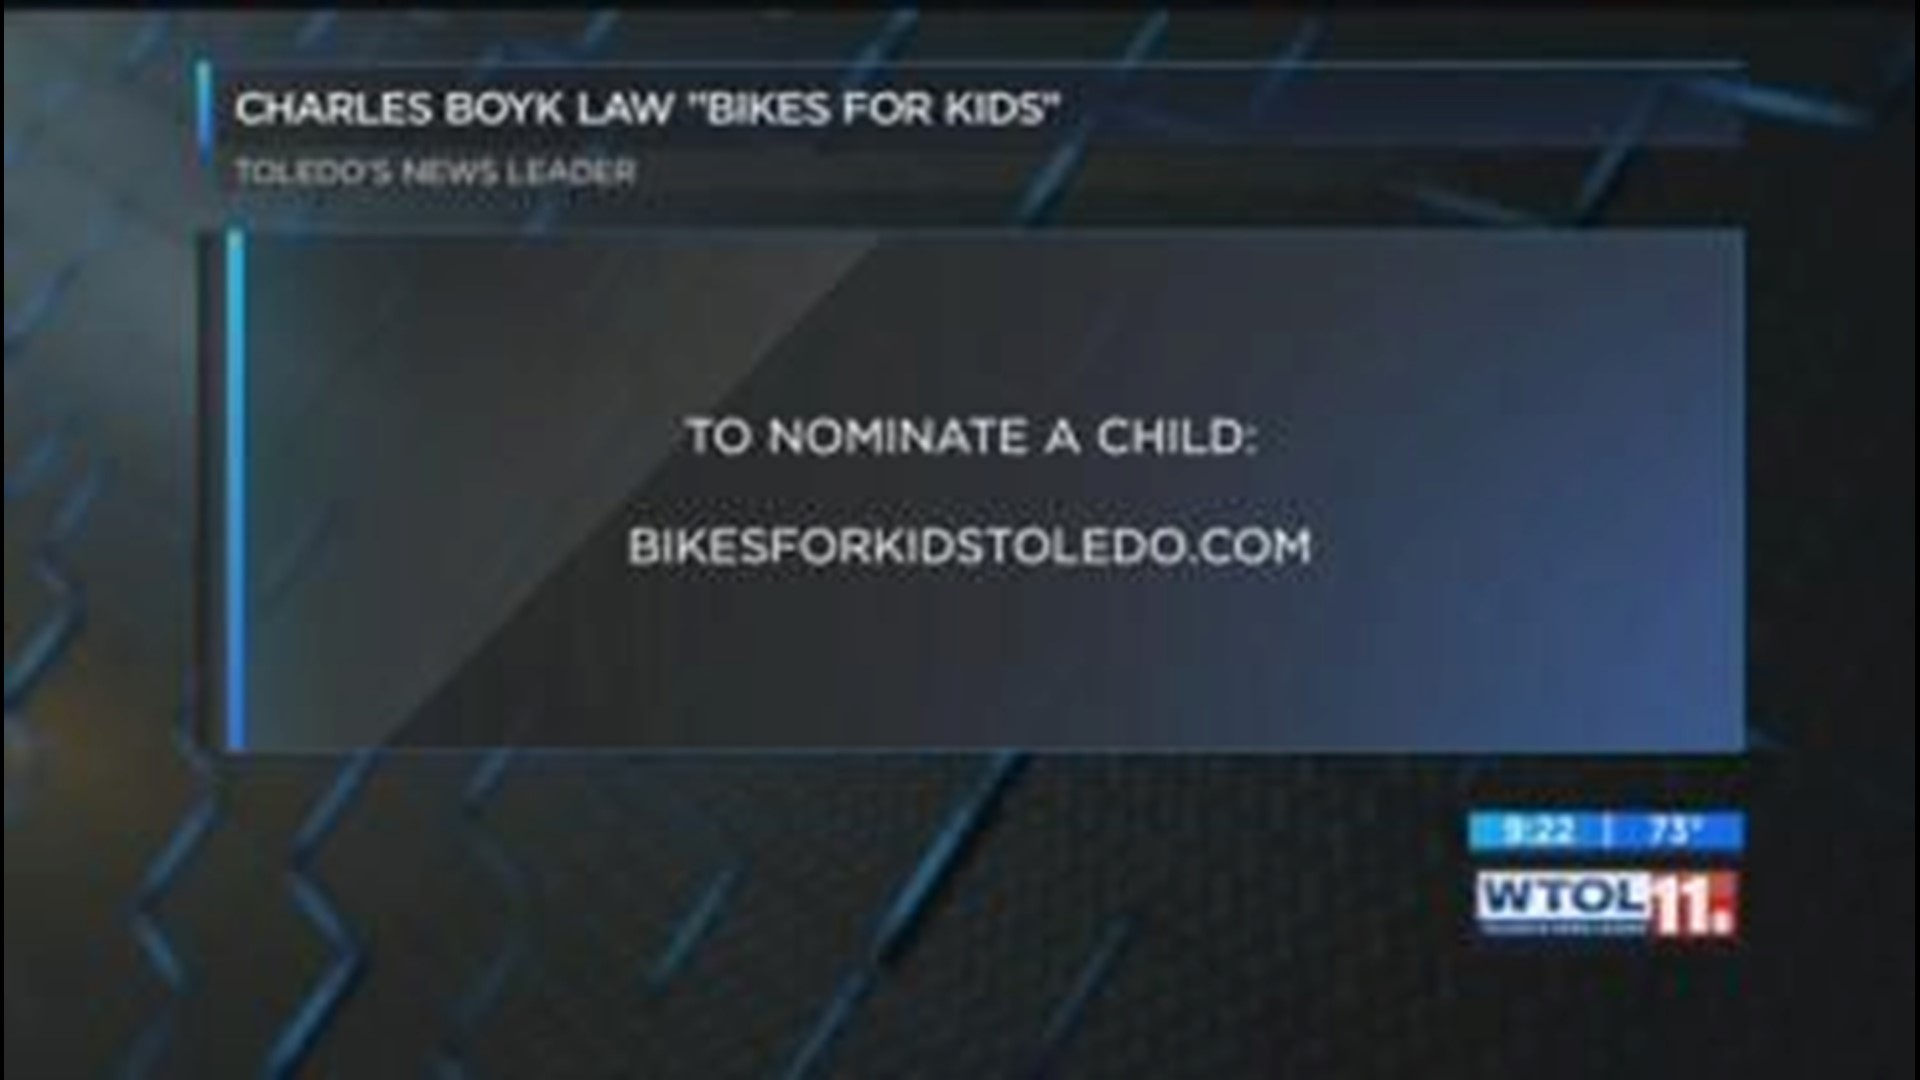 Bikes for Kids winner: July 11, 2018